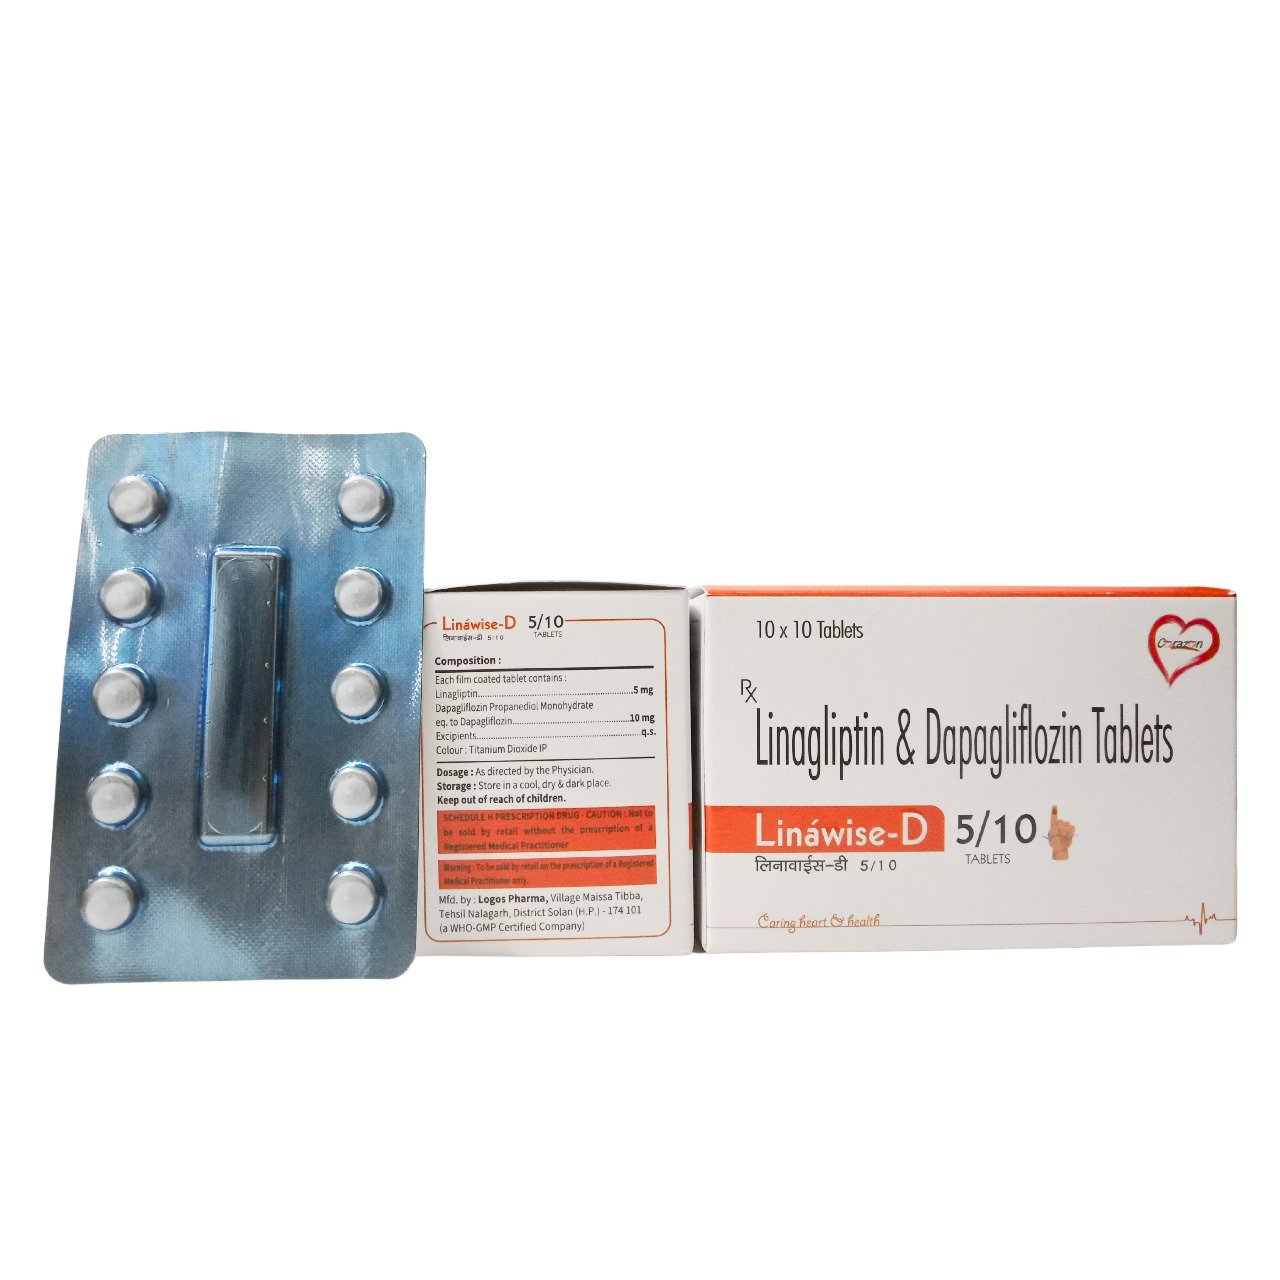 Linagliptin 5 mg Depagliflozin 10 mg